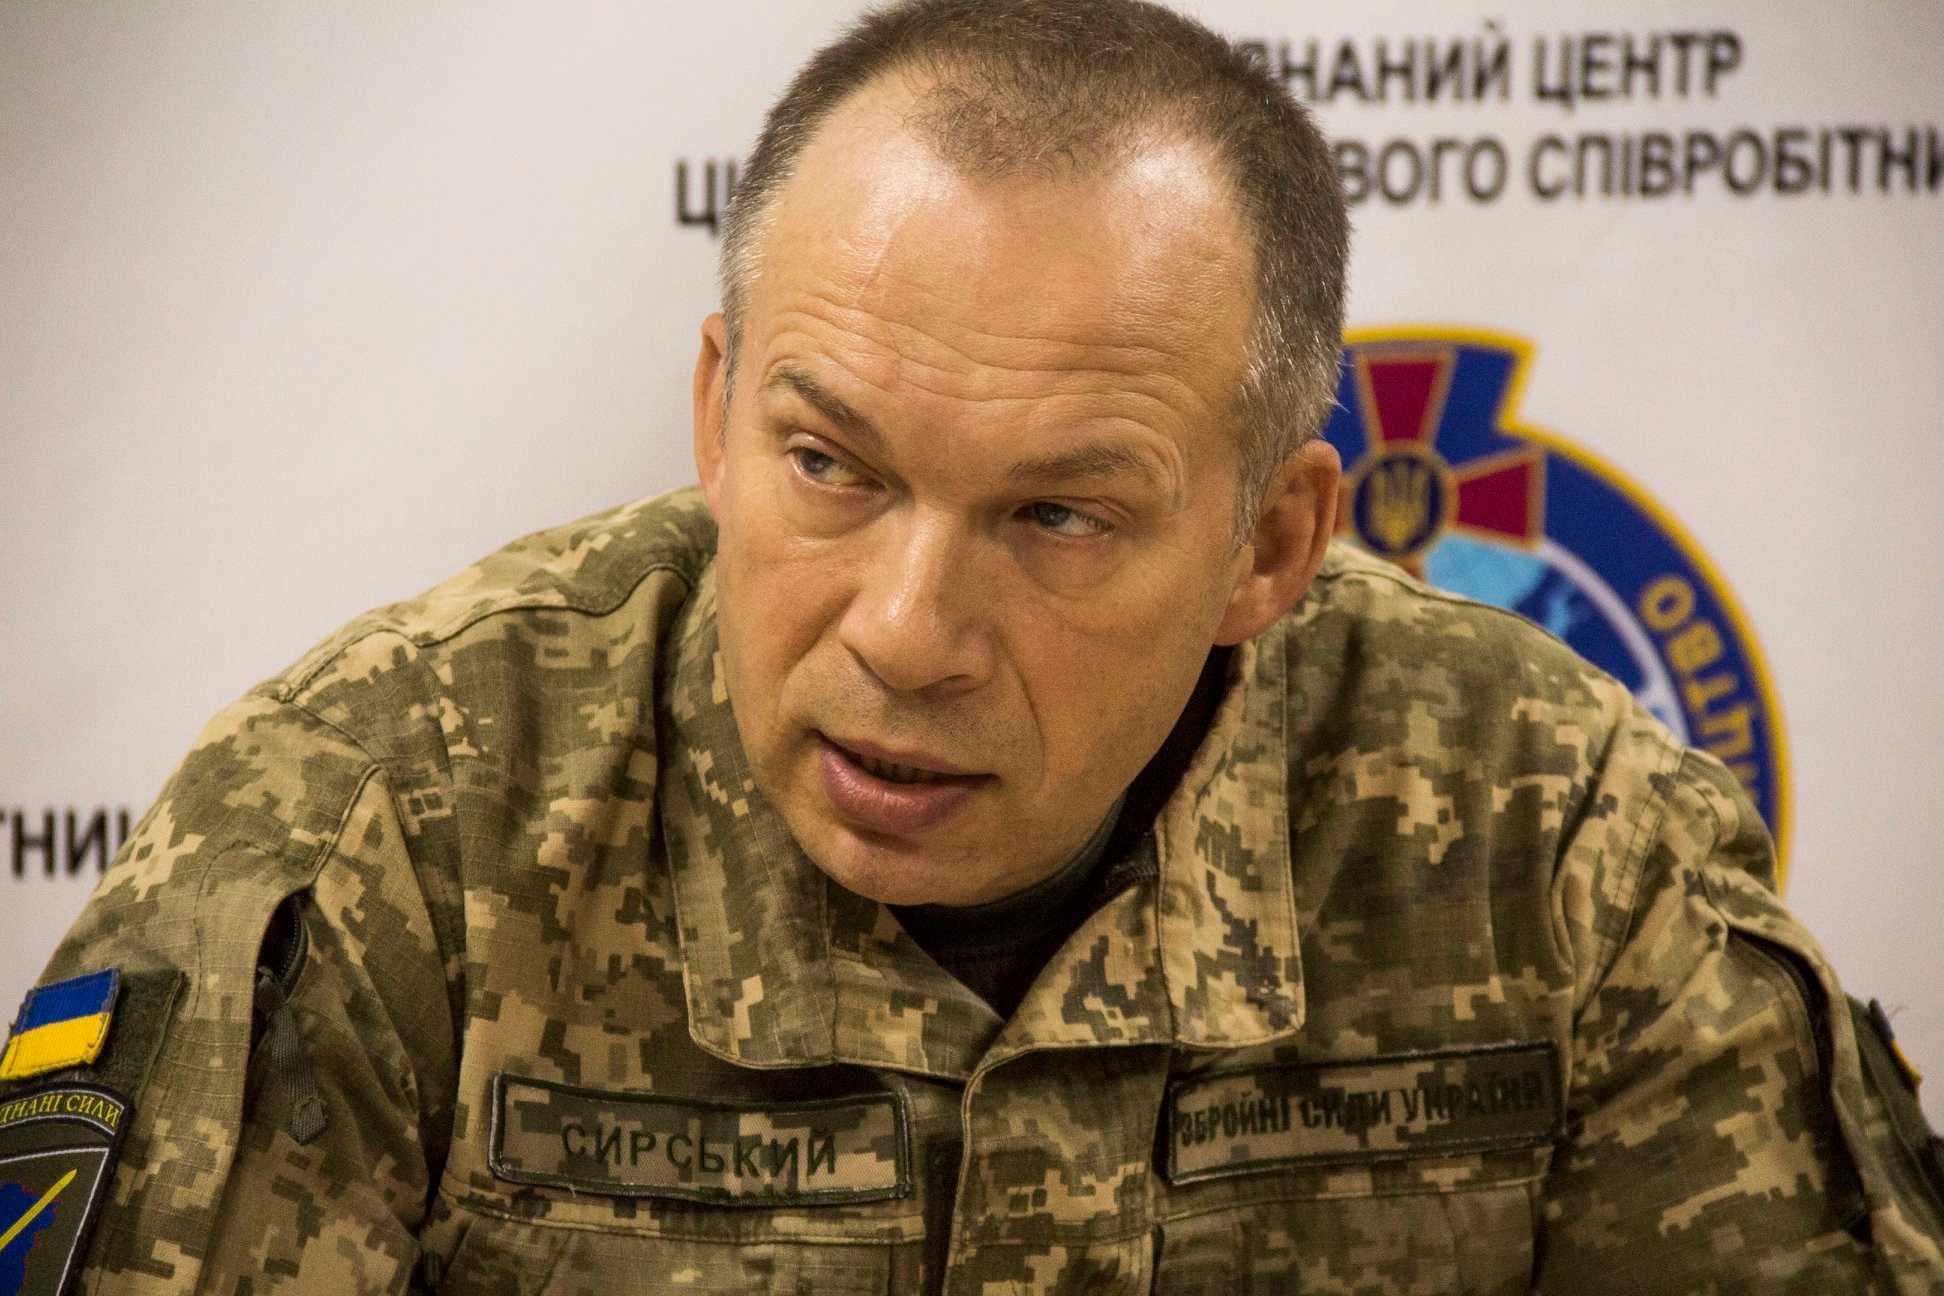 Zelenskiy replaces Ukraine’s embattled top general